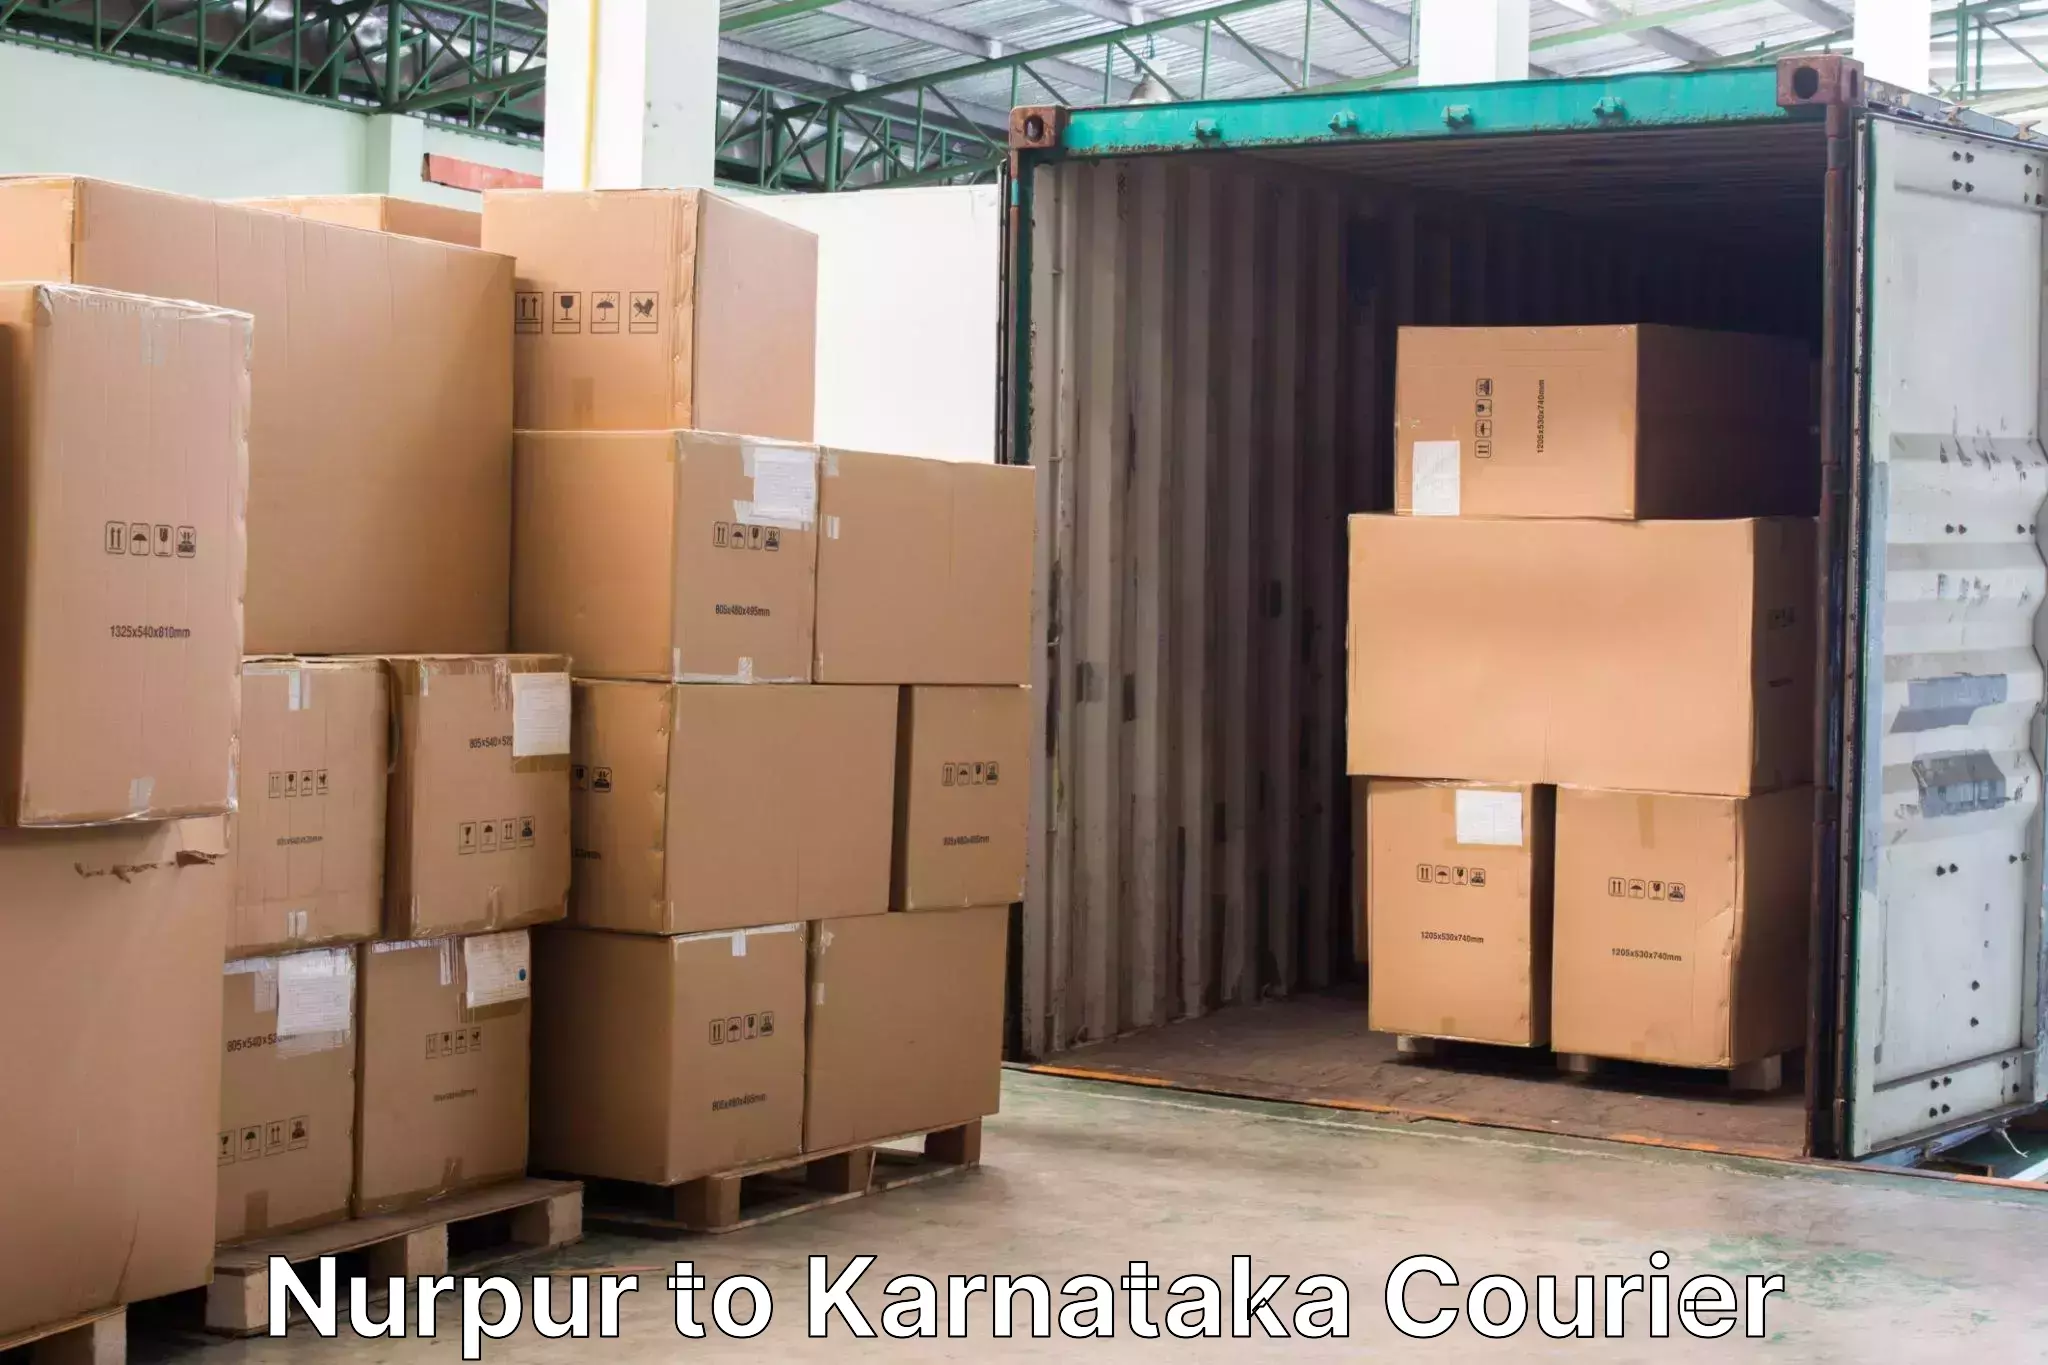 Baggage transport scheduler Nurpur to Karnataka